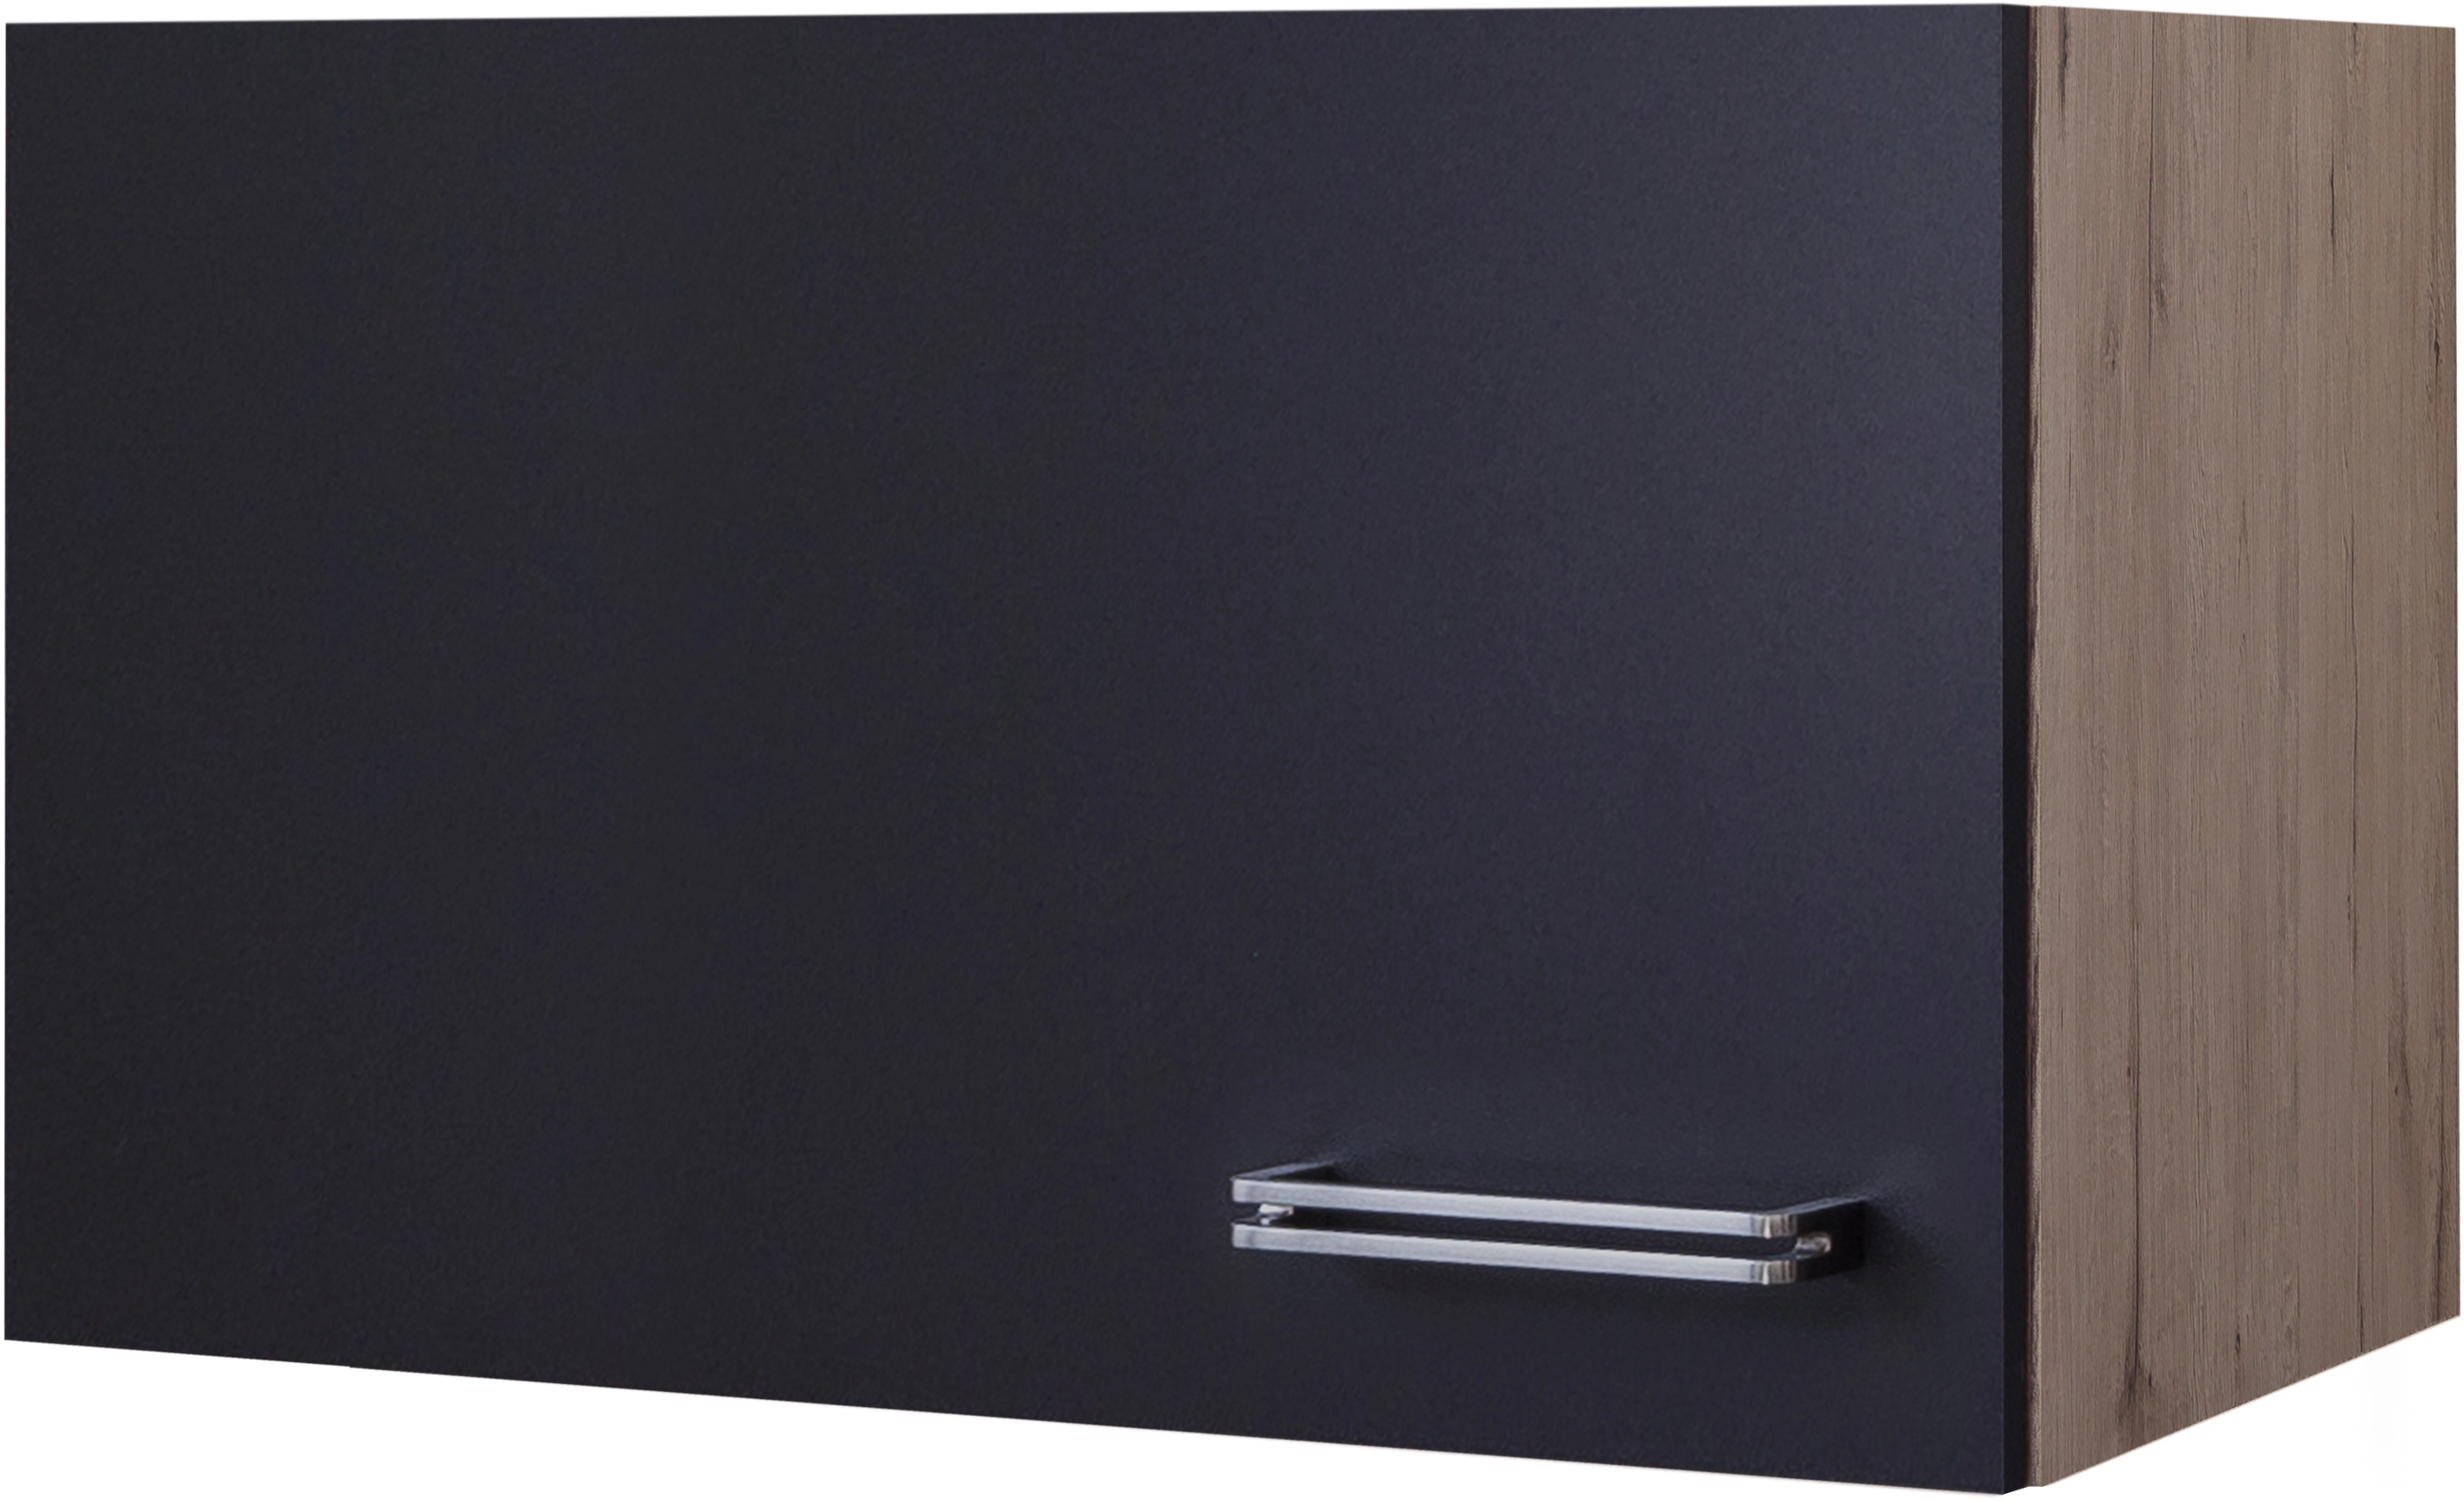 Flex-Well Exclusiv Kurz-Hängeschrank Lara 60 x 32 cm Anthrazit-San Remo  Eiche kaufen bei OBI